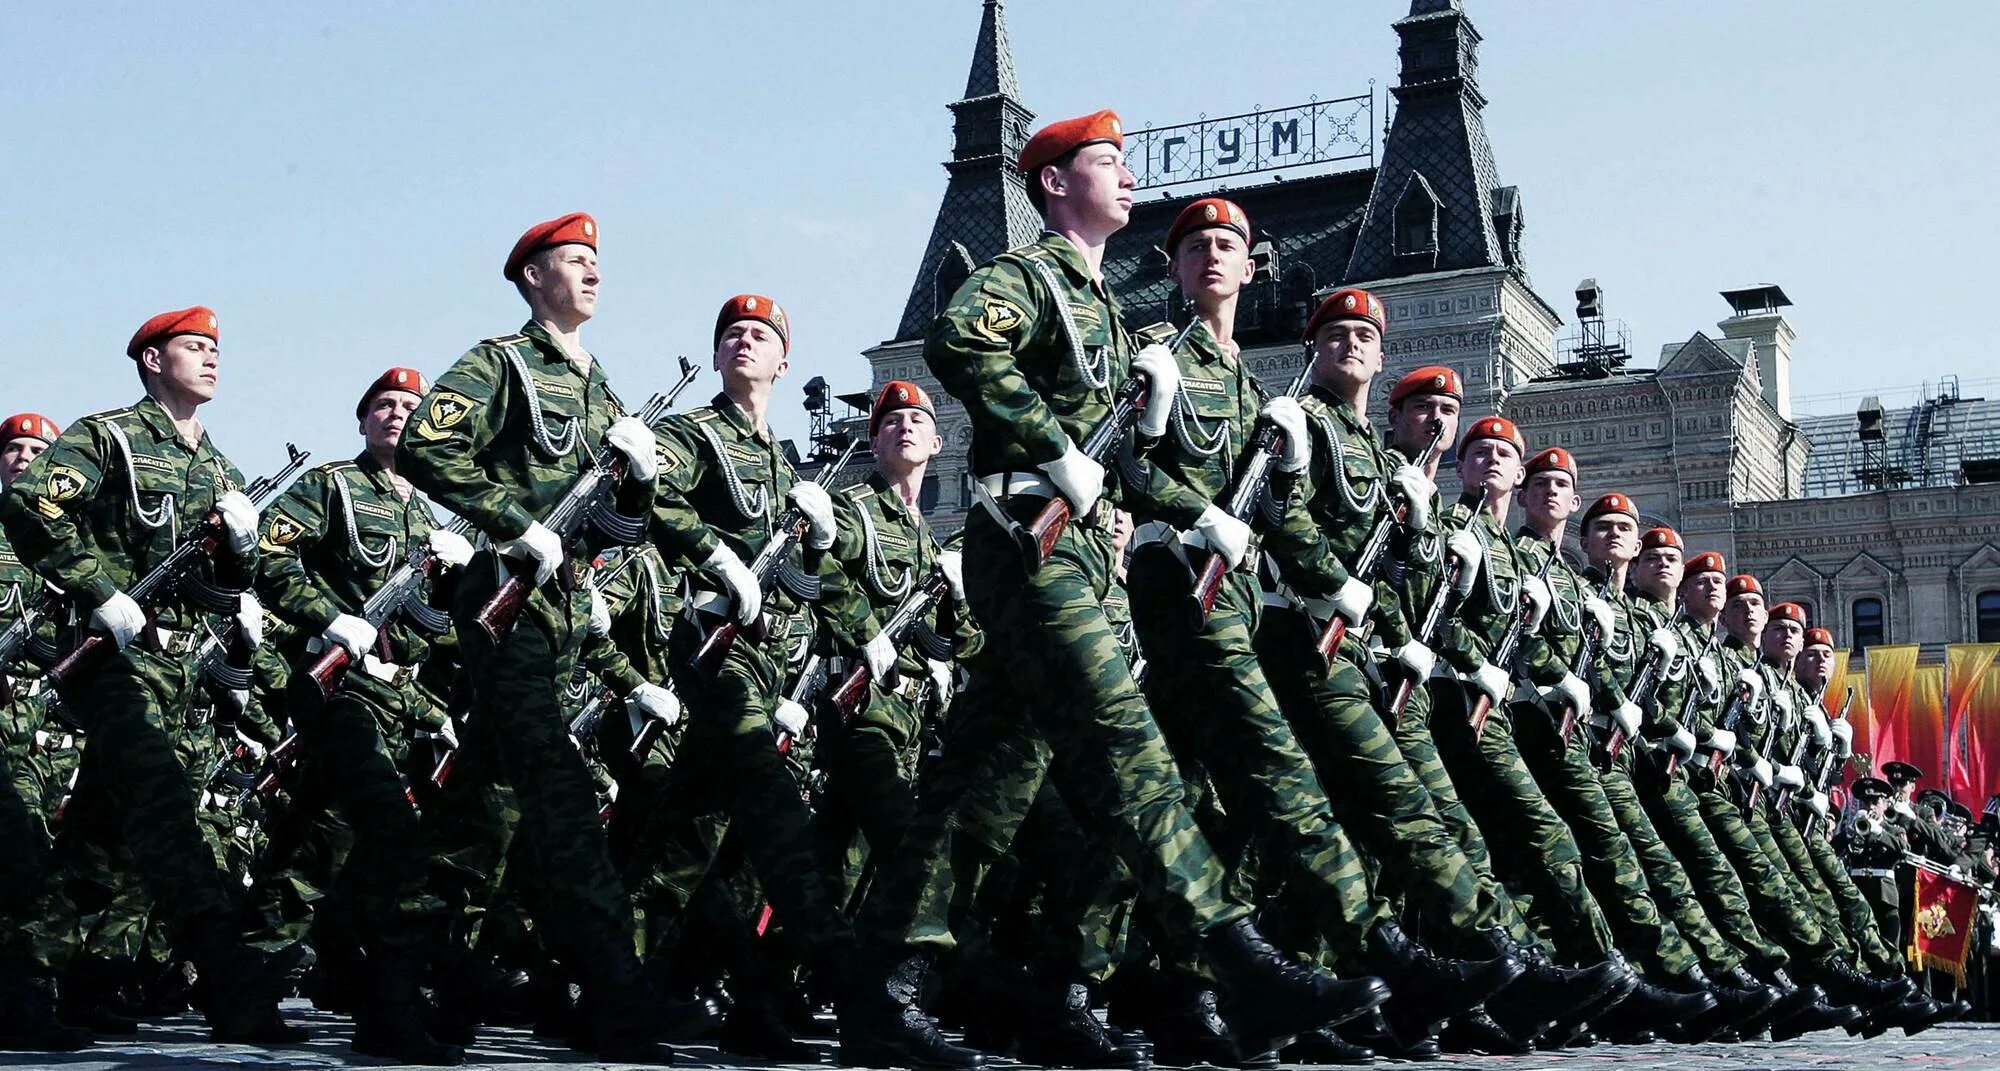 Строй русских солдат. Современная армия. Солдаты на параде. Войска на параде. Русские солдаты на параде.